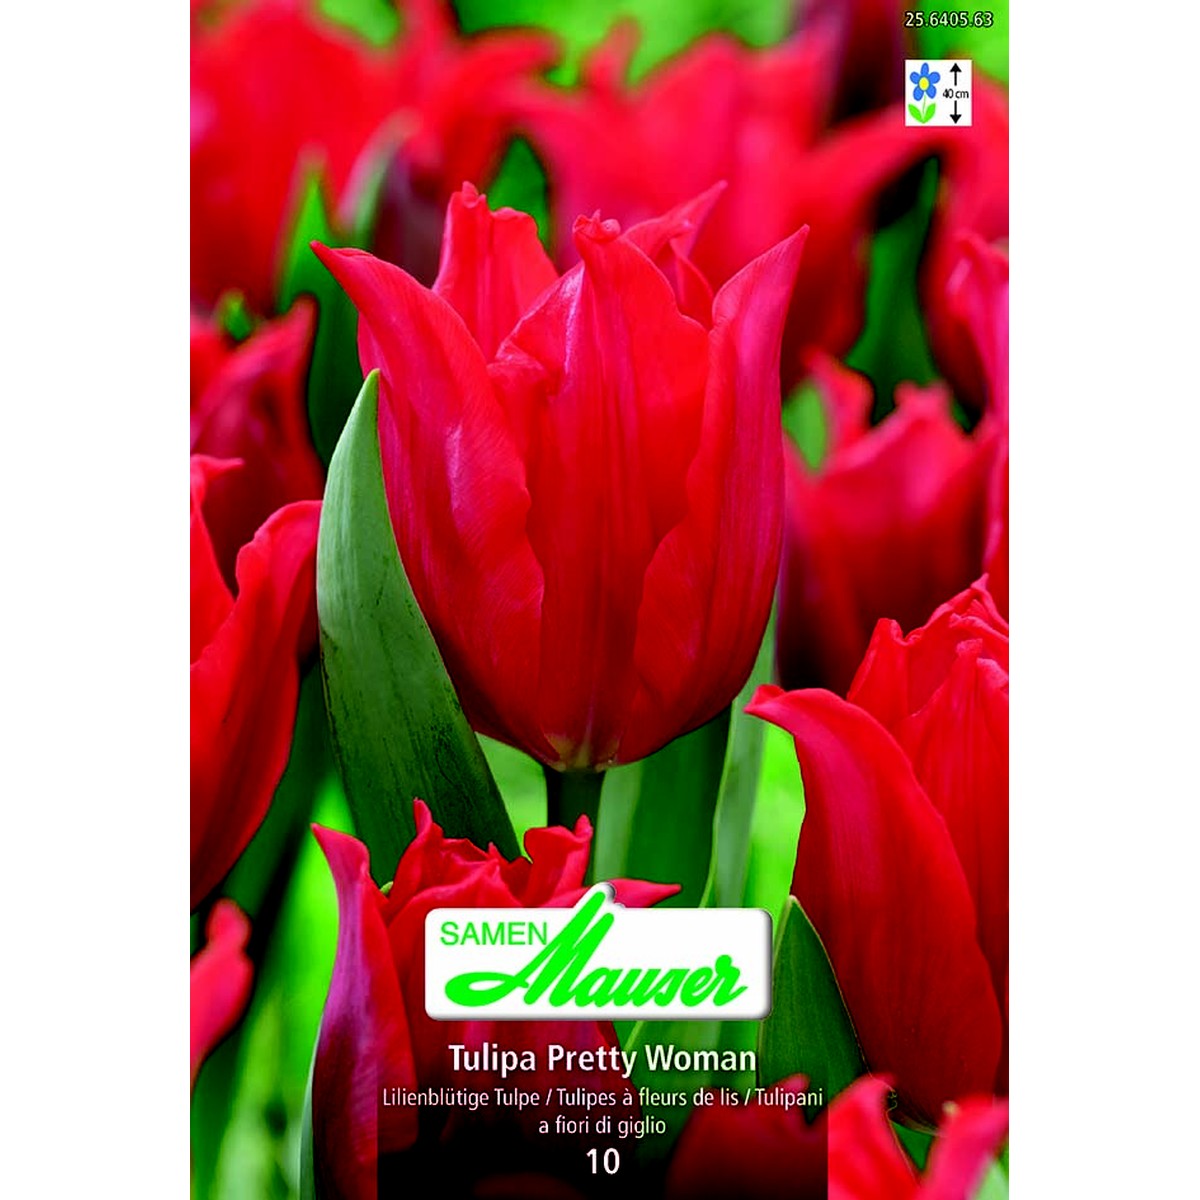   Tulipe TL Pretty Woman 10  12/